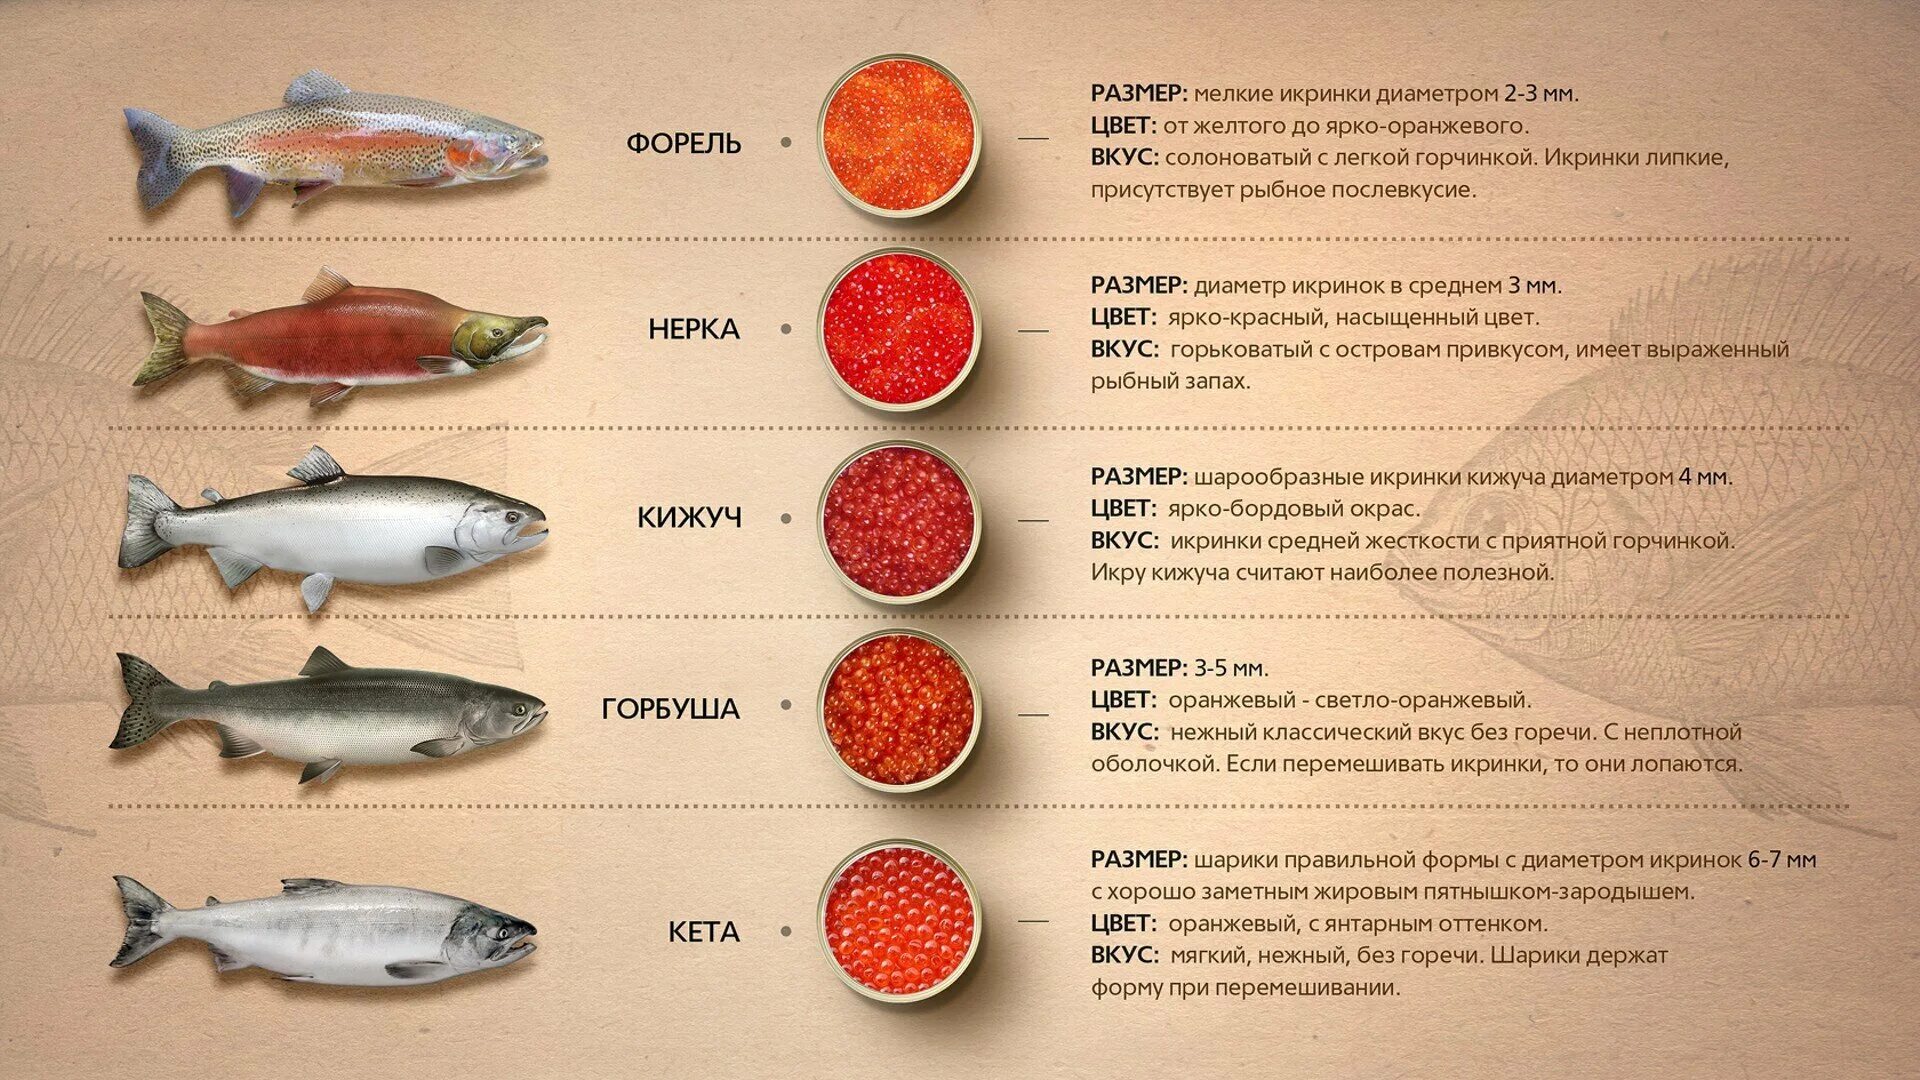 Рыбы семейства лососевых названия. Красная рыба виды названия. Размер икры лососевых рыб. Диаметр икринок лососевых рыб. Сравнение размеров рыб